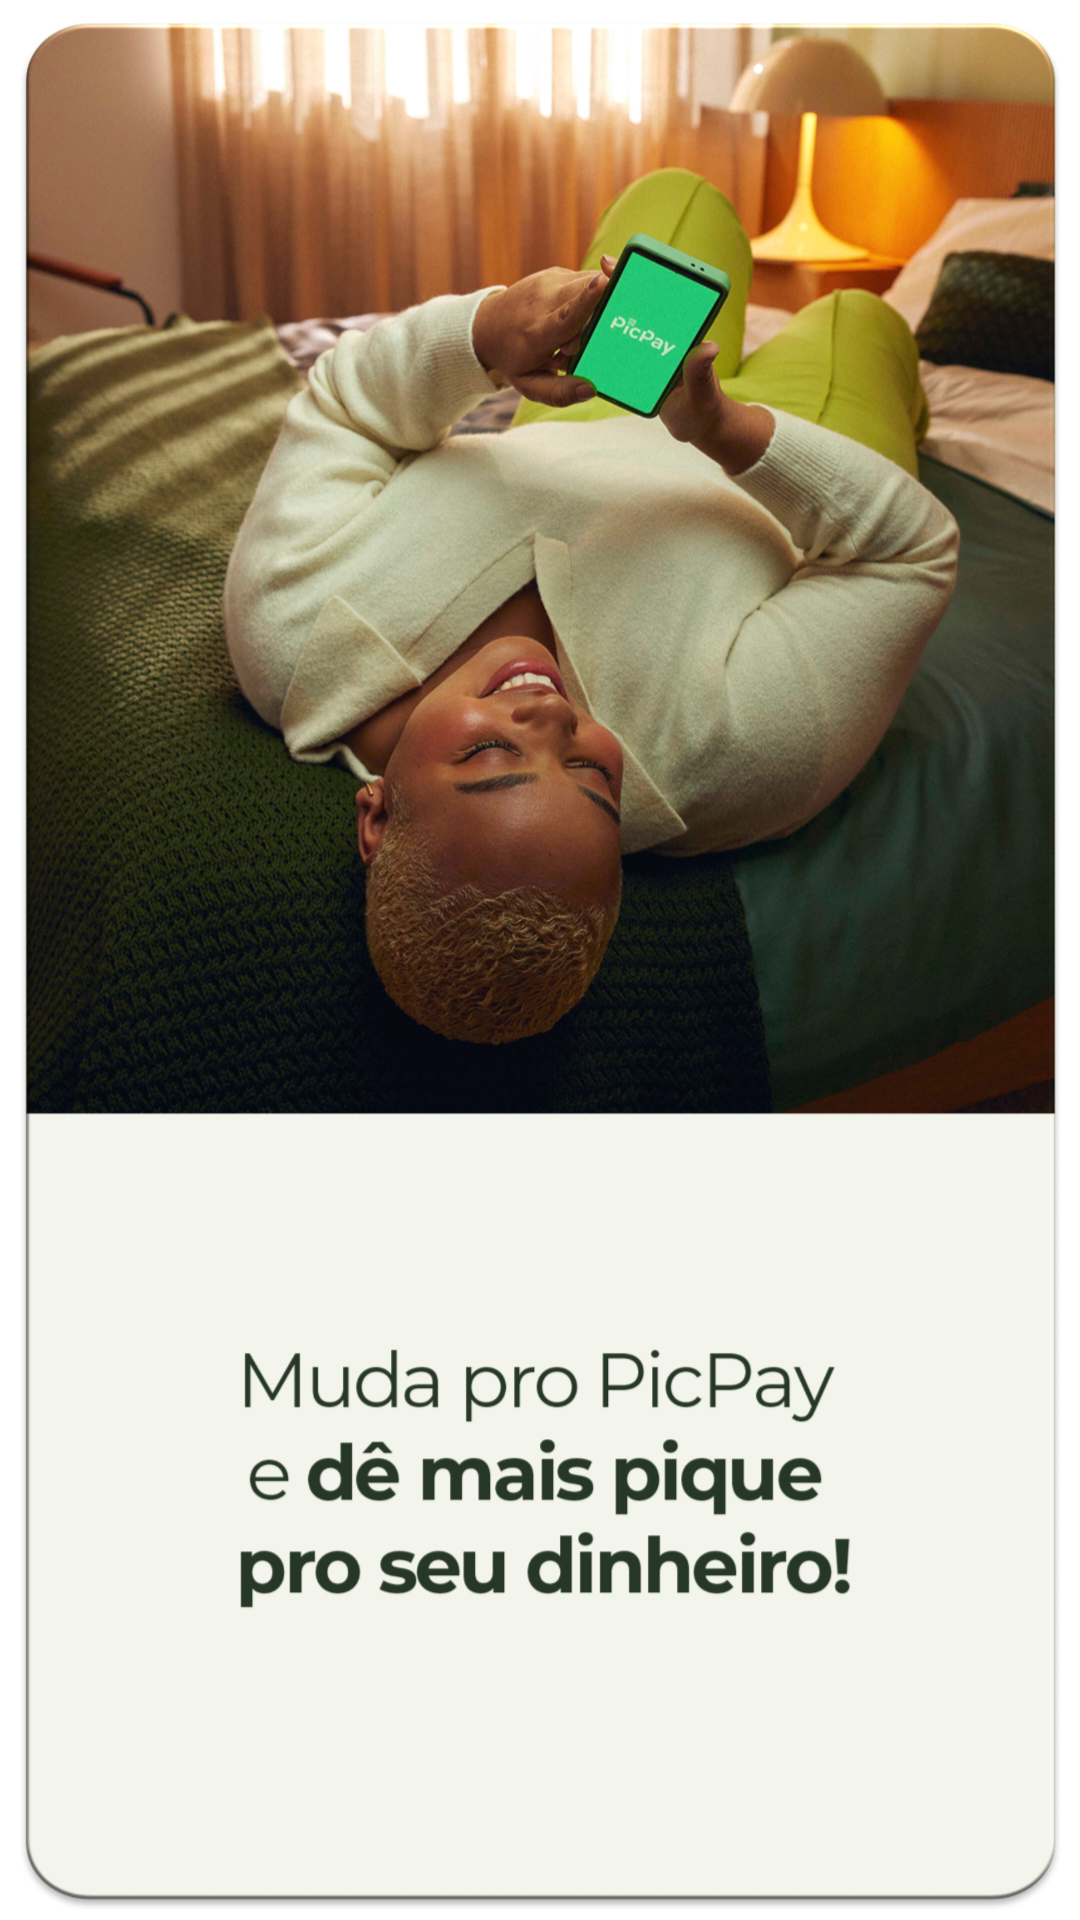 Go gle Q. picpay mod apk dinheiro infinito Todas Notícias Vídeos Shopping  Imagens Ma  picpa PicPay APK v11.0.26 Download (MOD) 2022 For Android -  NerveFilter Download PicPay Mod Apk Dinheiro